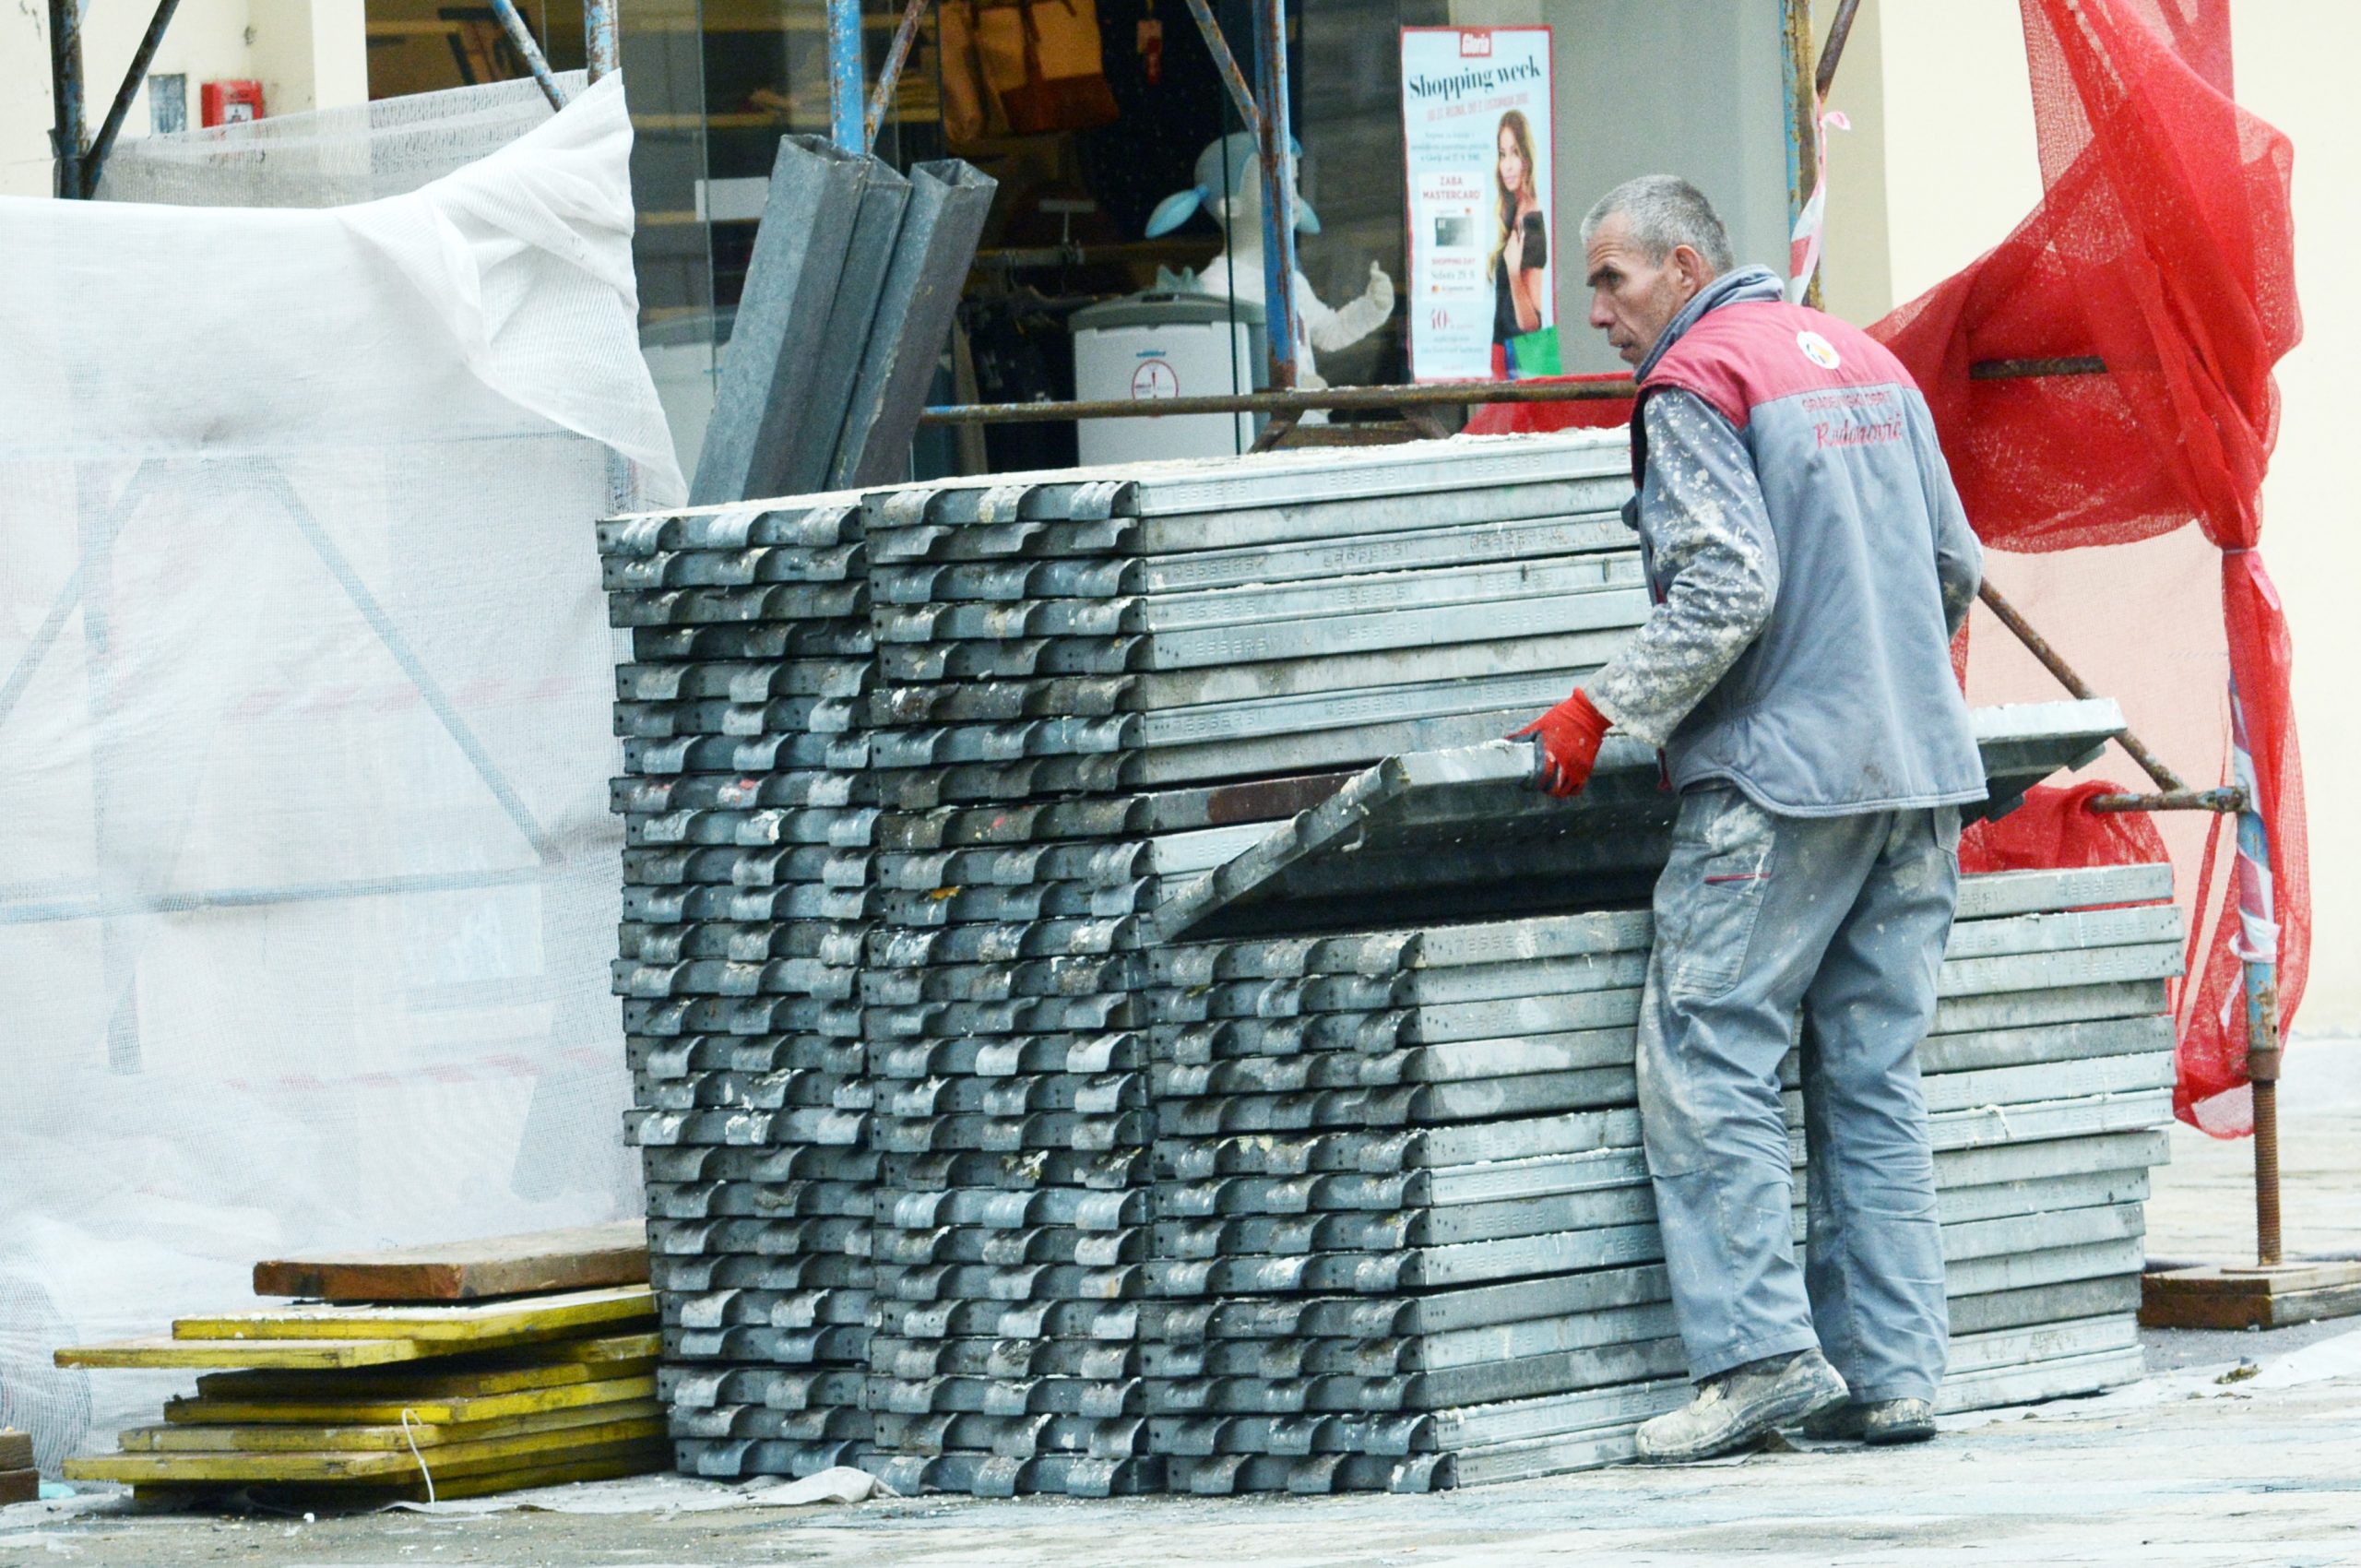 02.10.2018., Sisak - Radnici uklanjaju skele nakon zavrsetka radova na energetskoj obnovi fasade stambene zgrade u Radicevoj ulici. 
Photo: Nikola Cutuk/PIXSELL